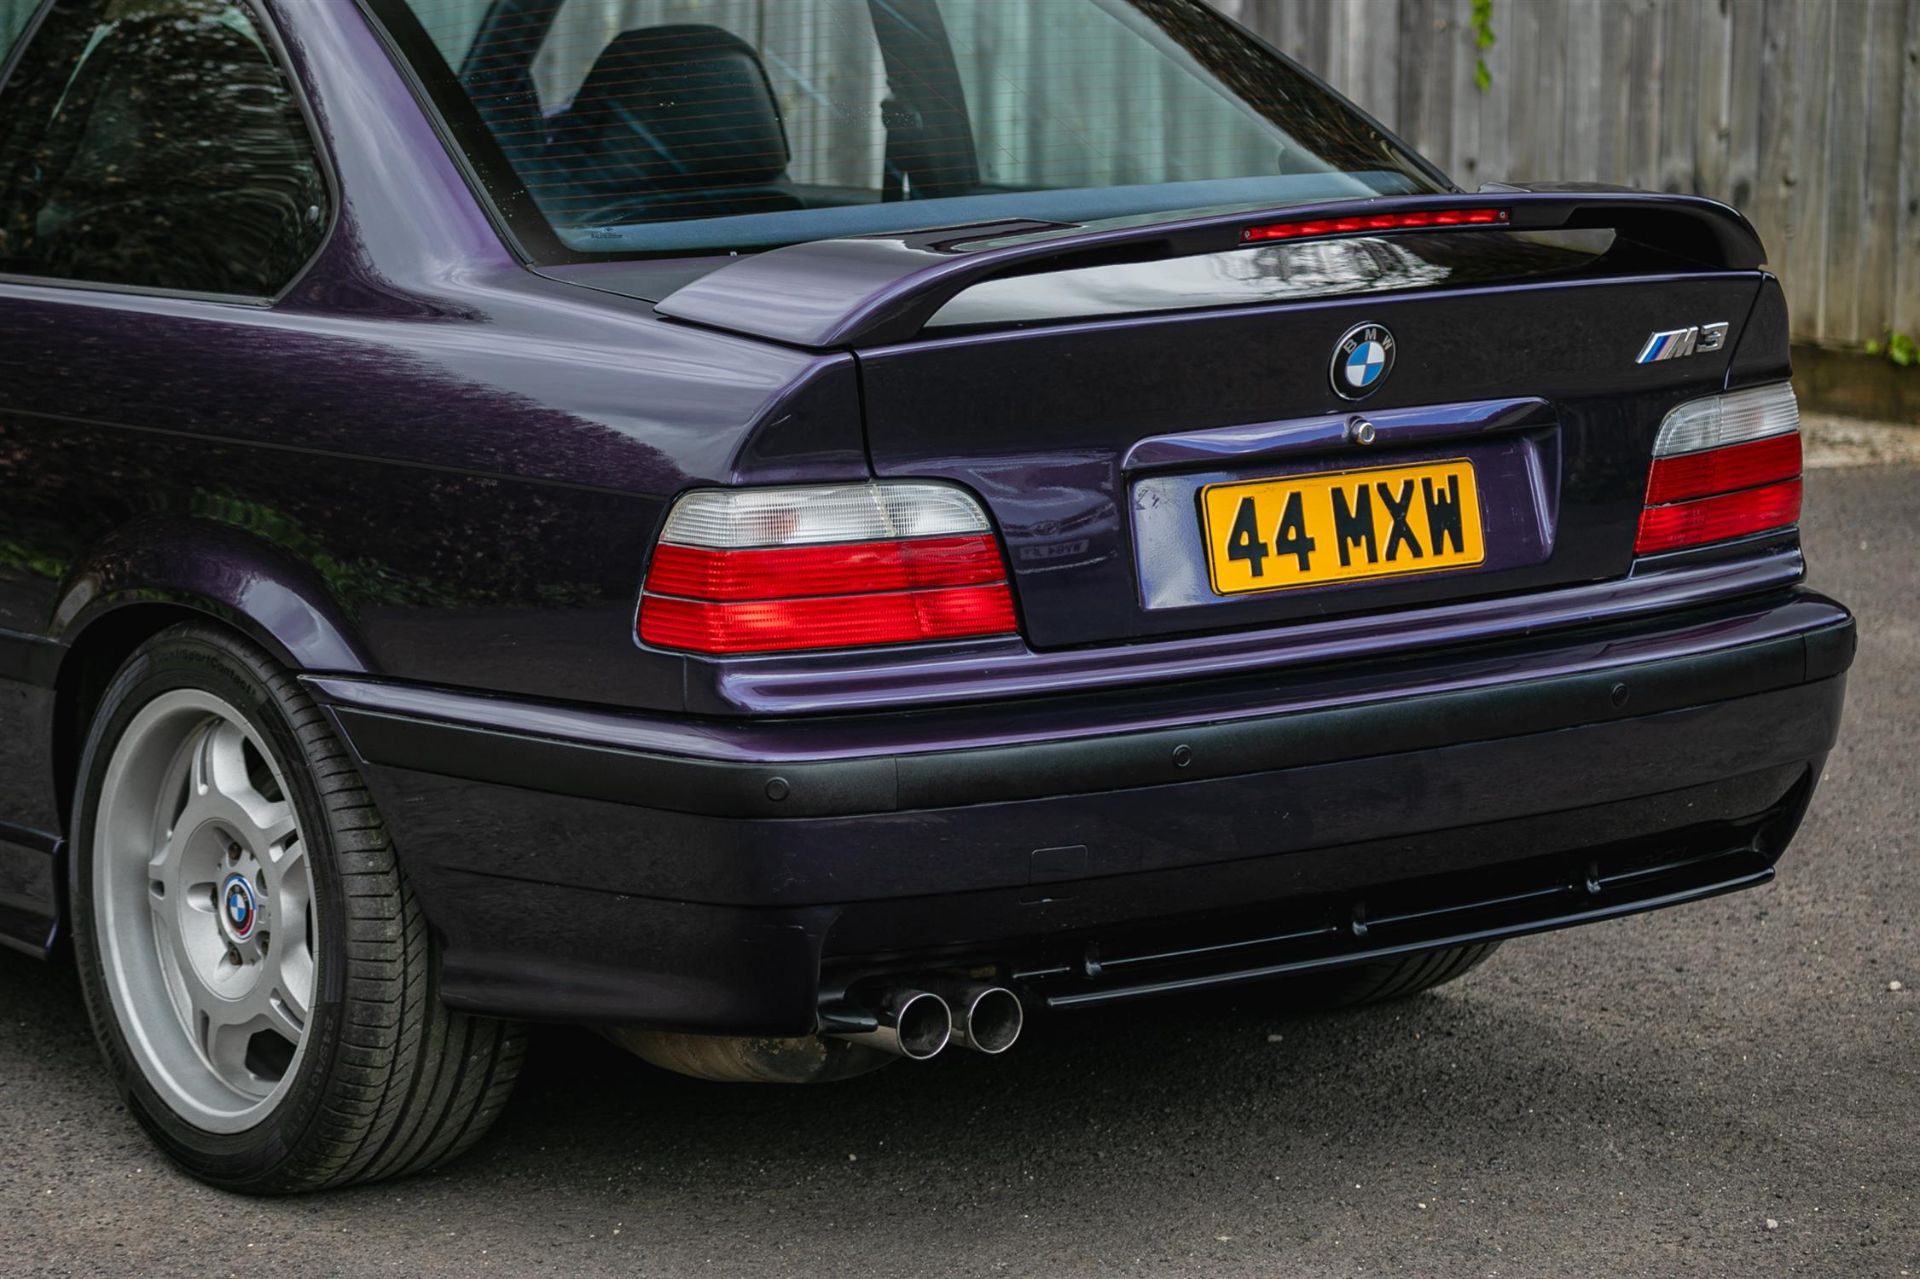 1998 BMW M3 Evolution (E36) Coupé - Image 9 of 10